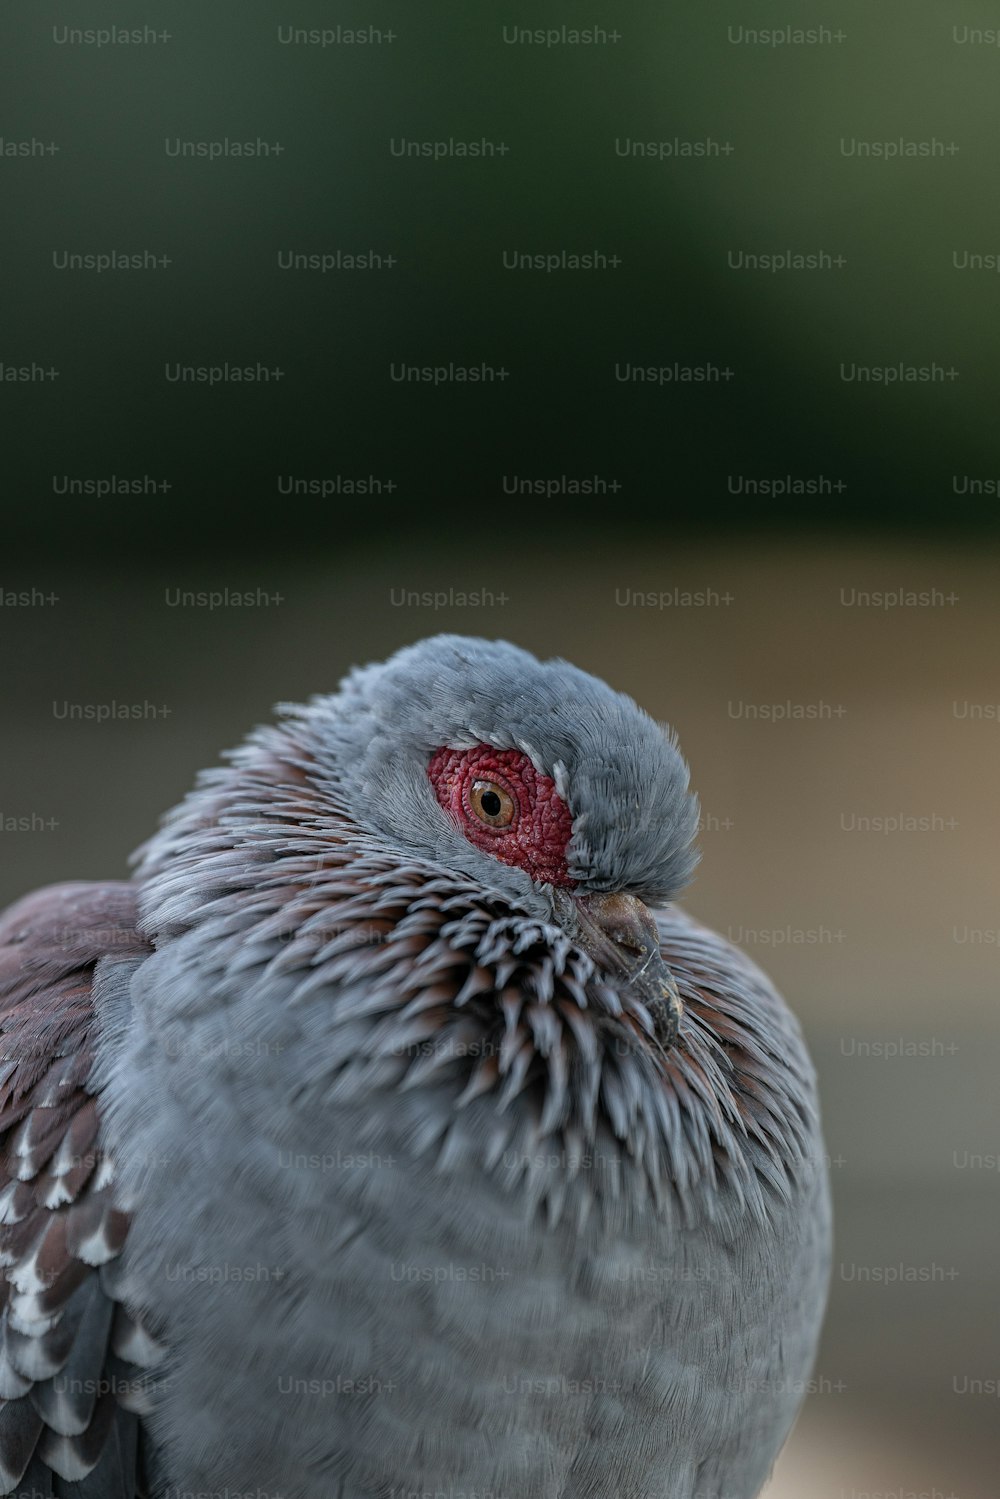 Un primer plano de un pájaro con ojos rojos